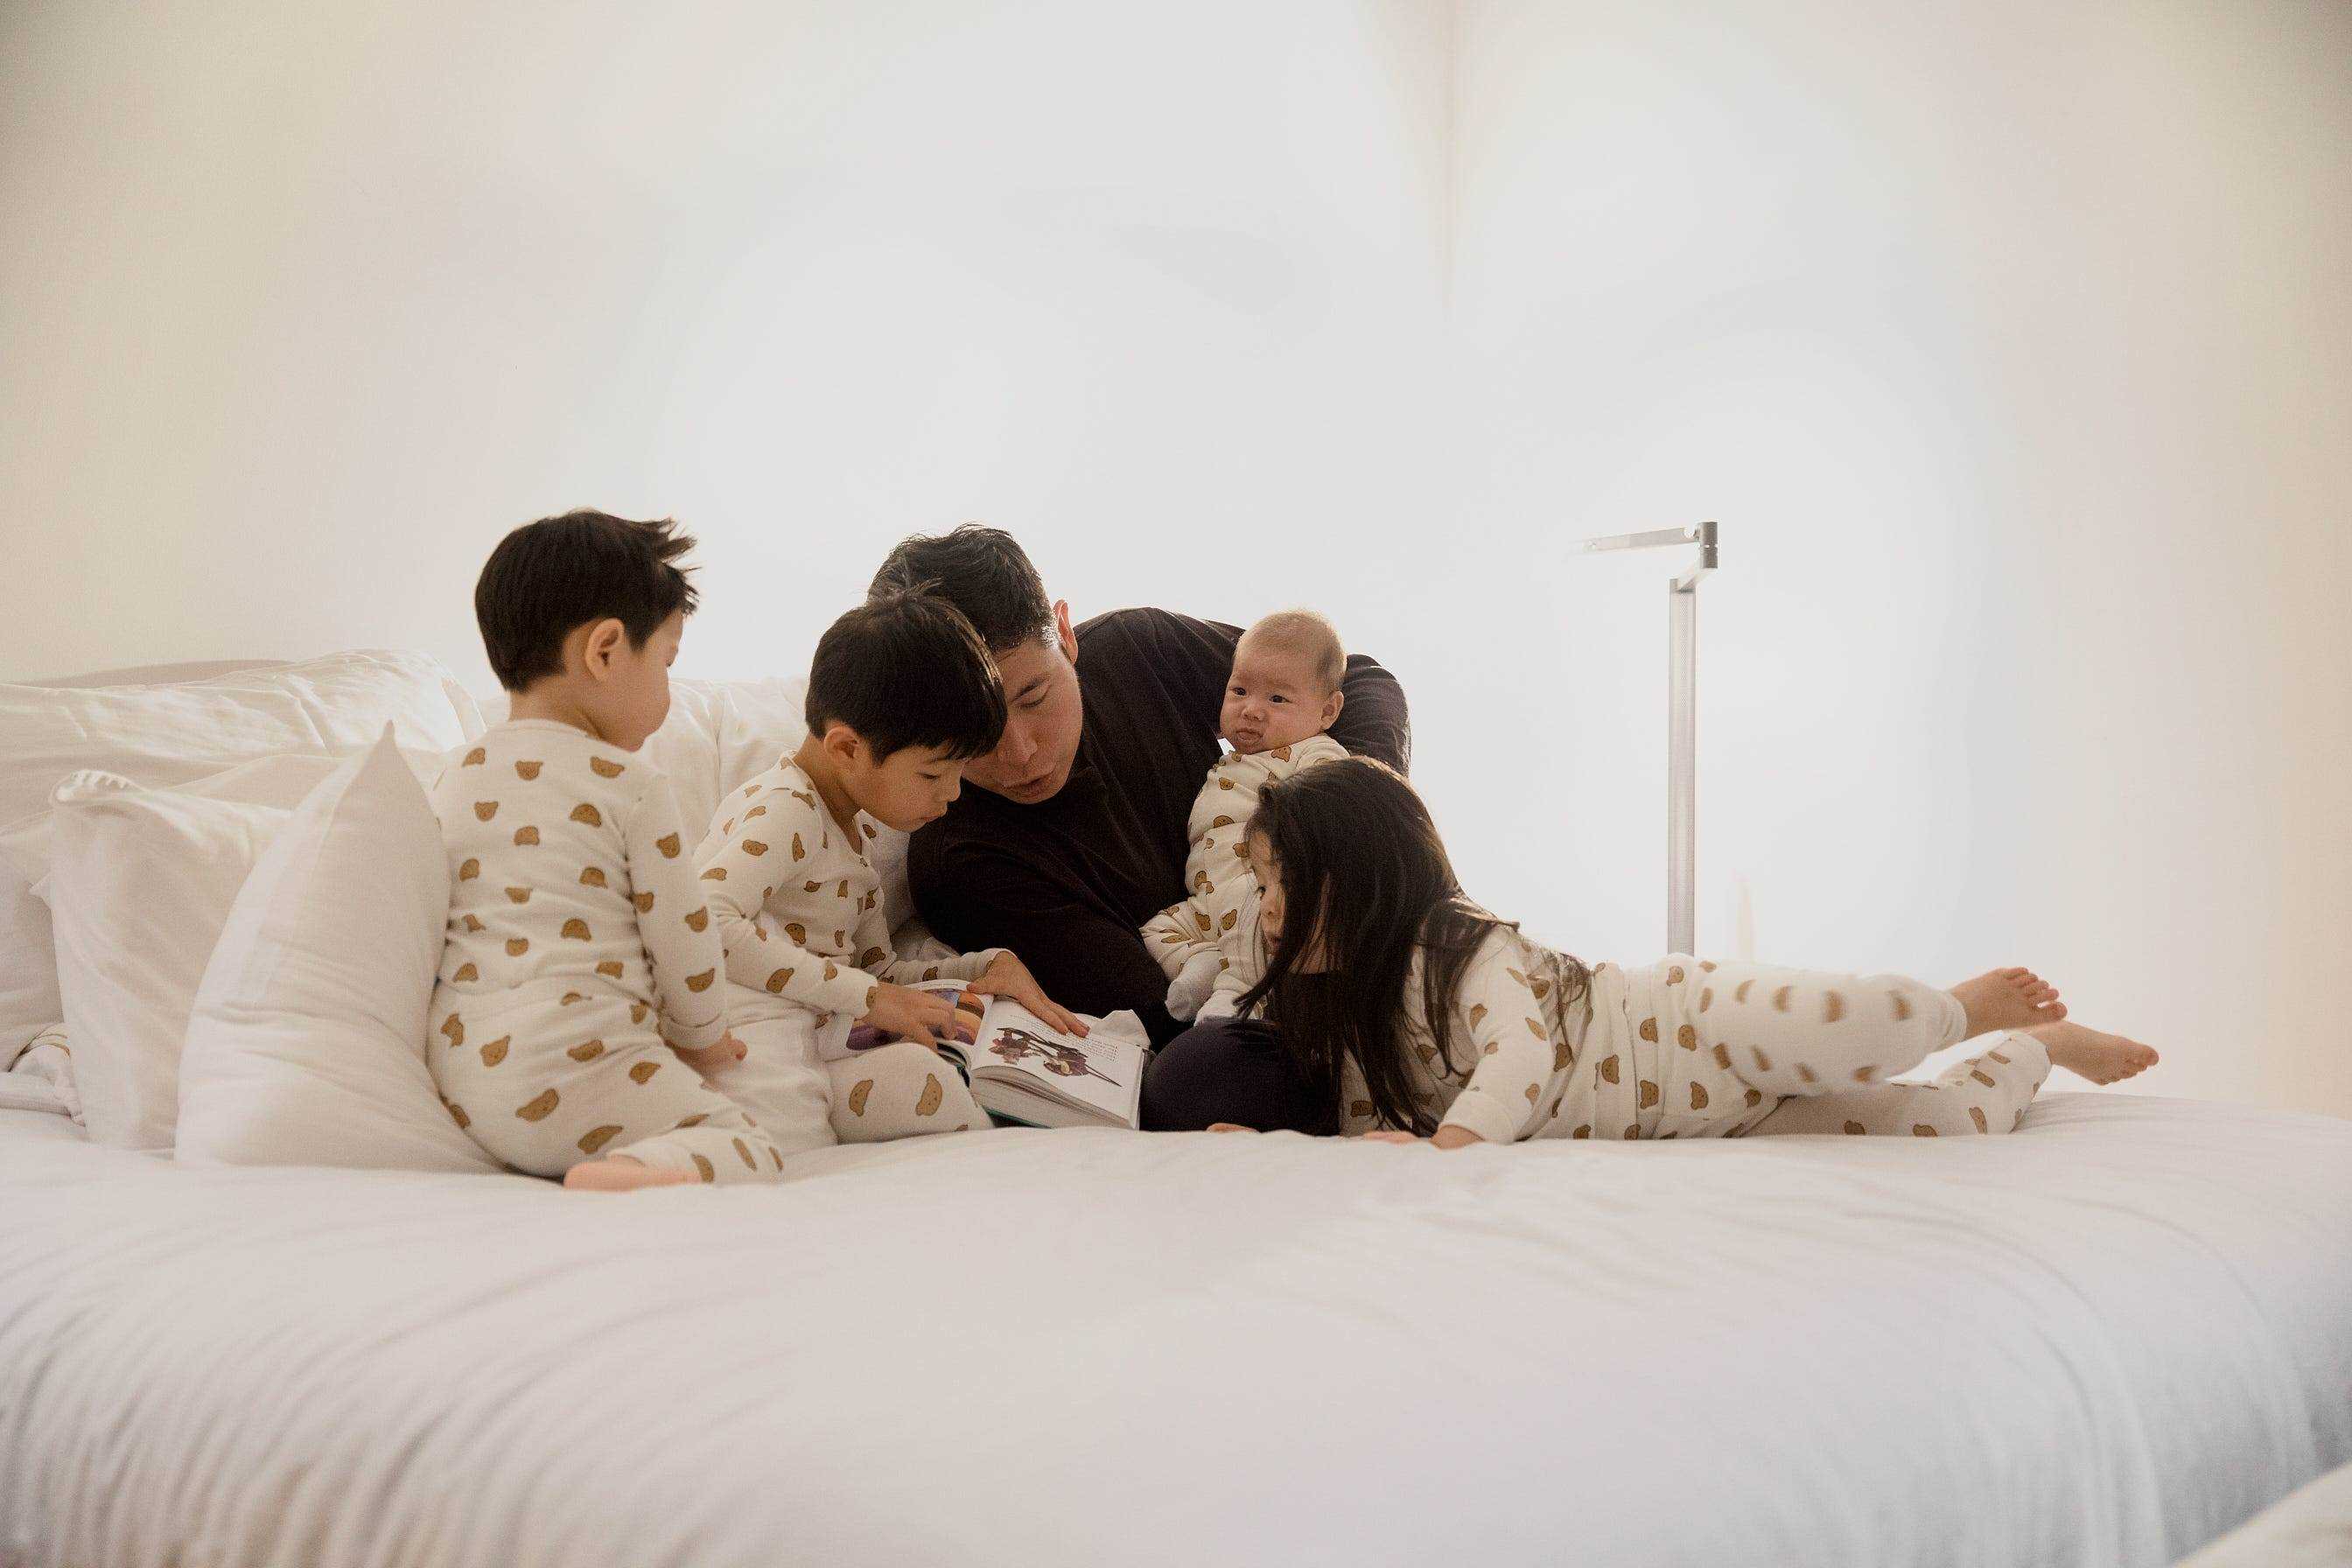 Anthony Tan auf einem Bett mit seinen Kindern, die eine Gutenachtgeschichte lesen.